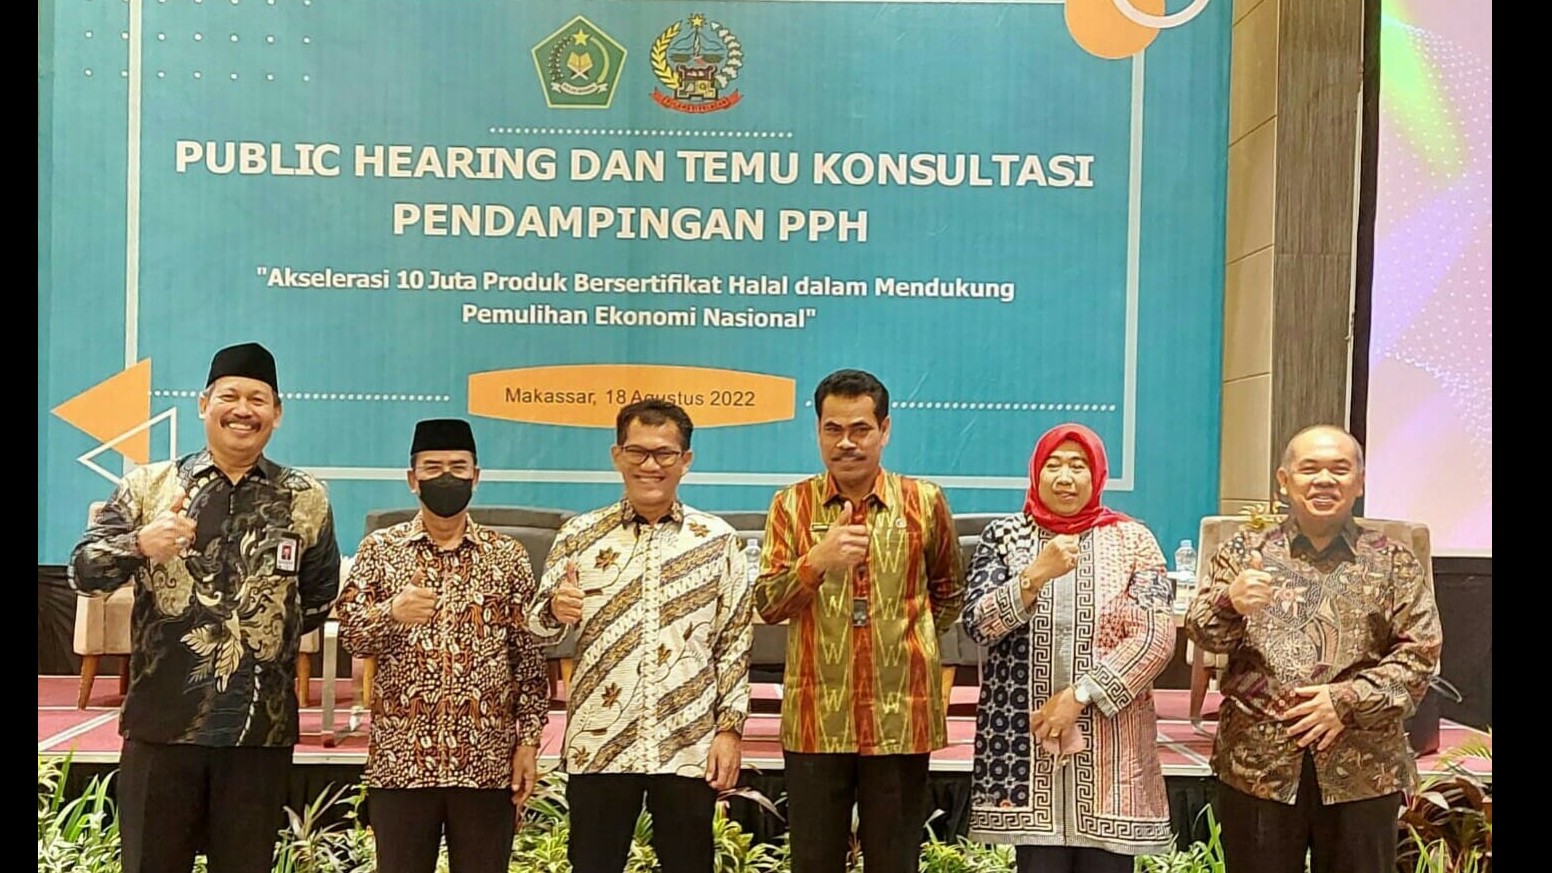 Public hearing dan temu konsultasi Pendamping PPH di Makassar